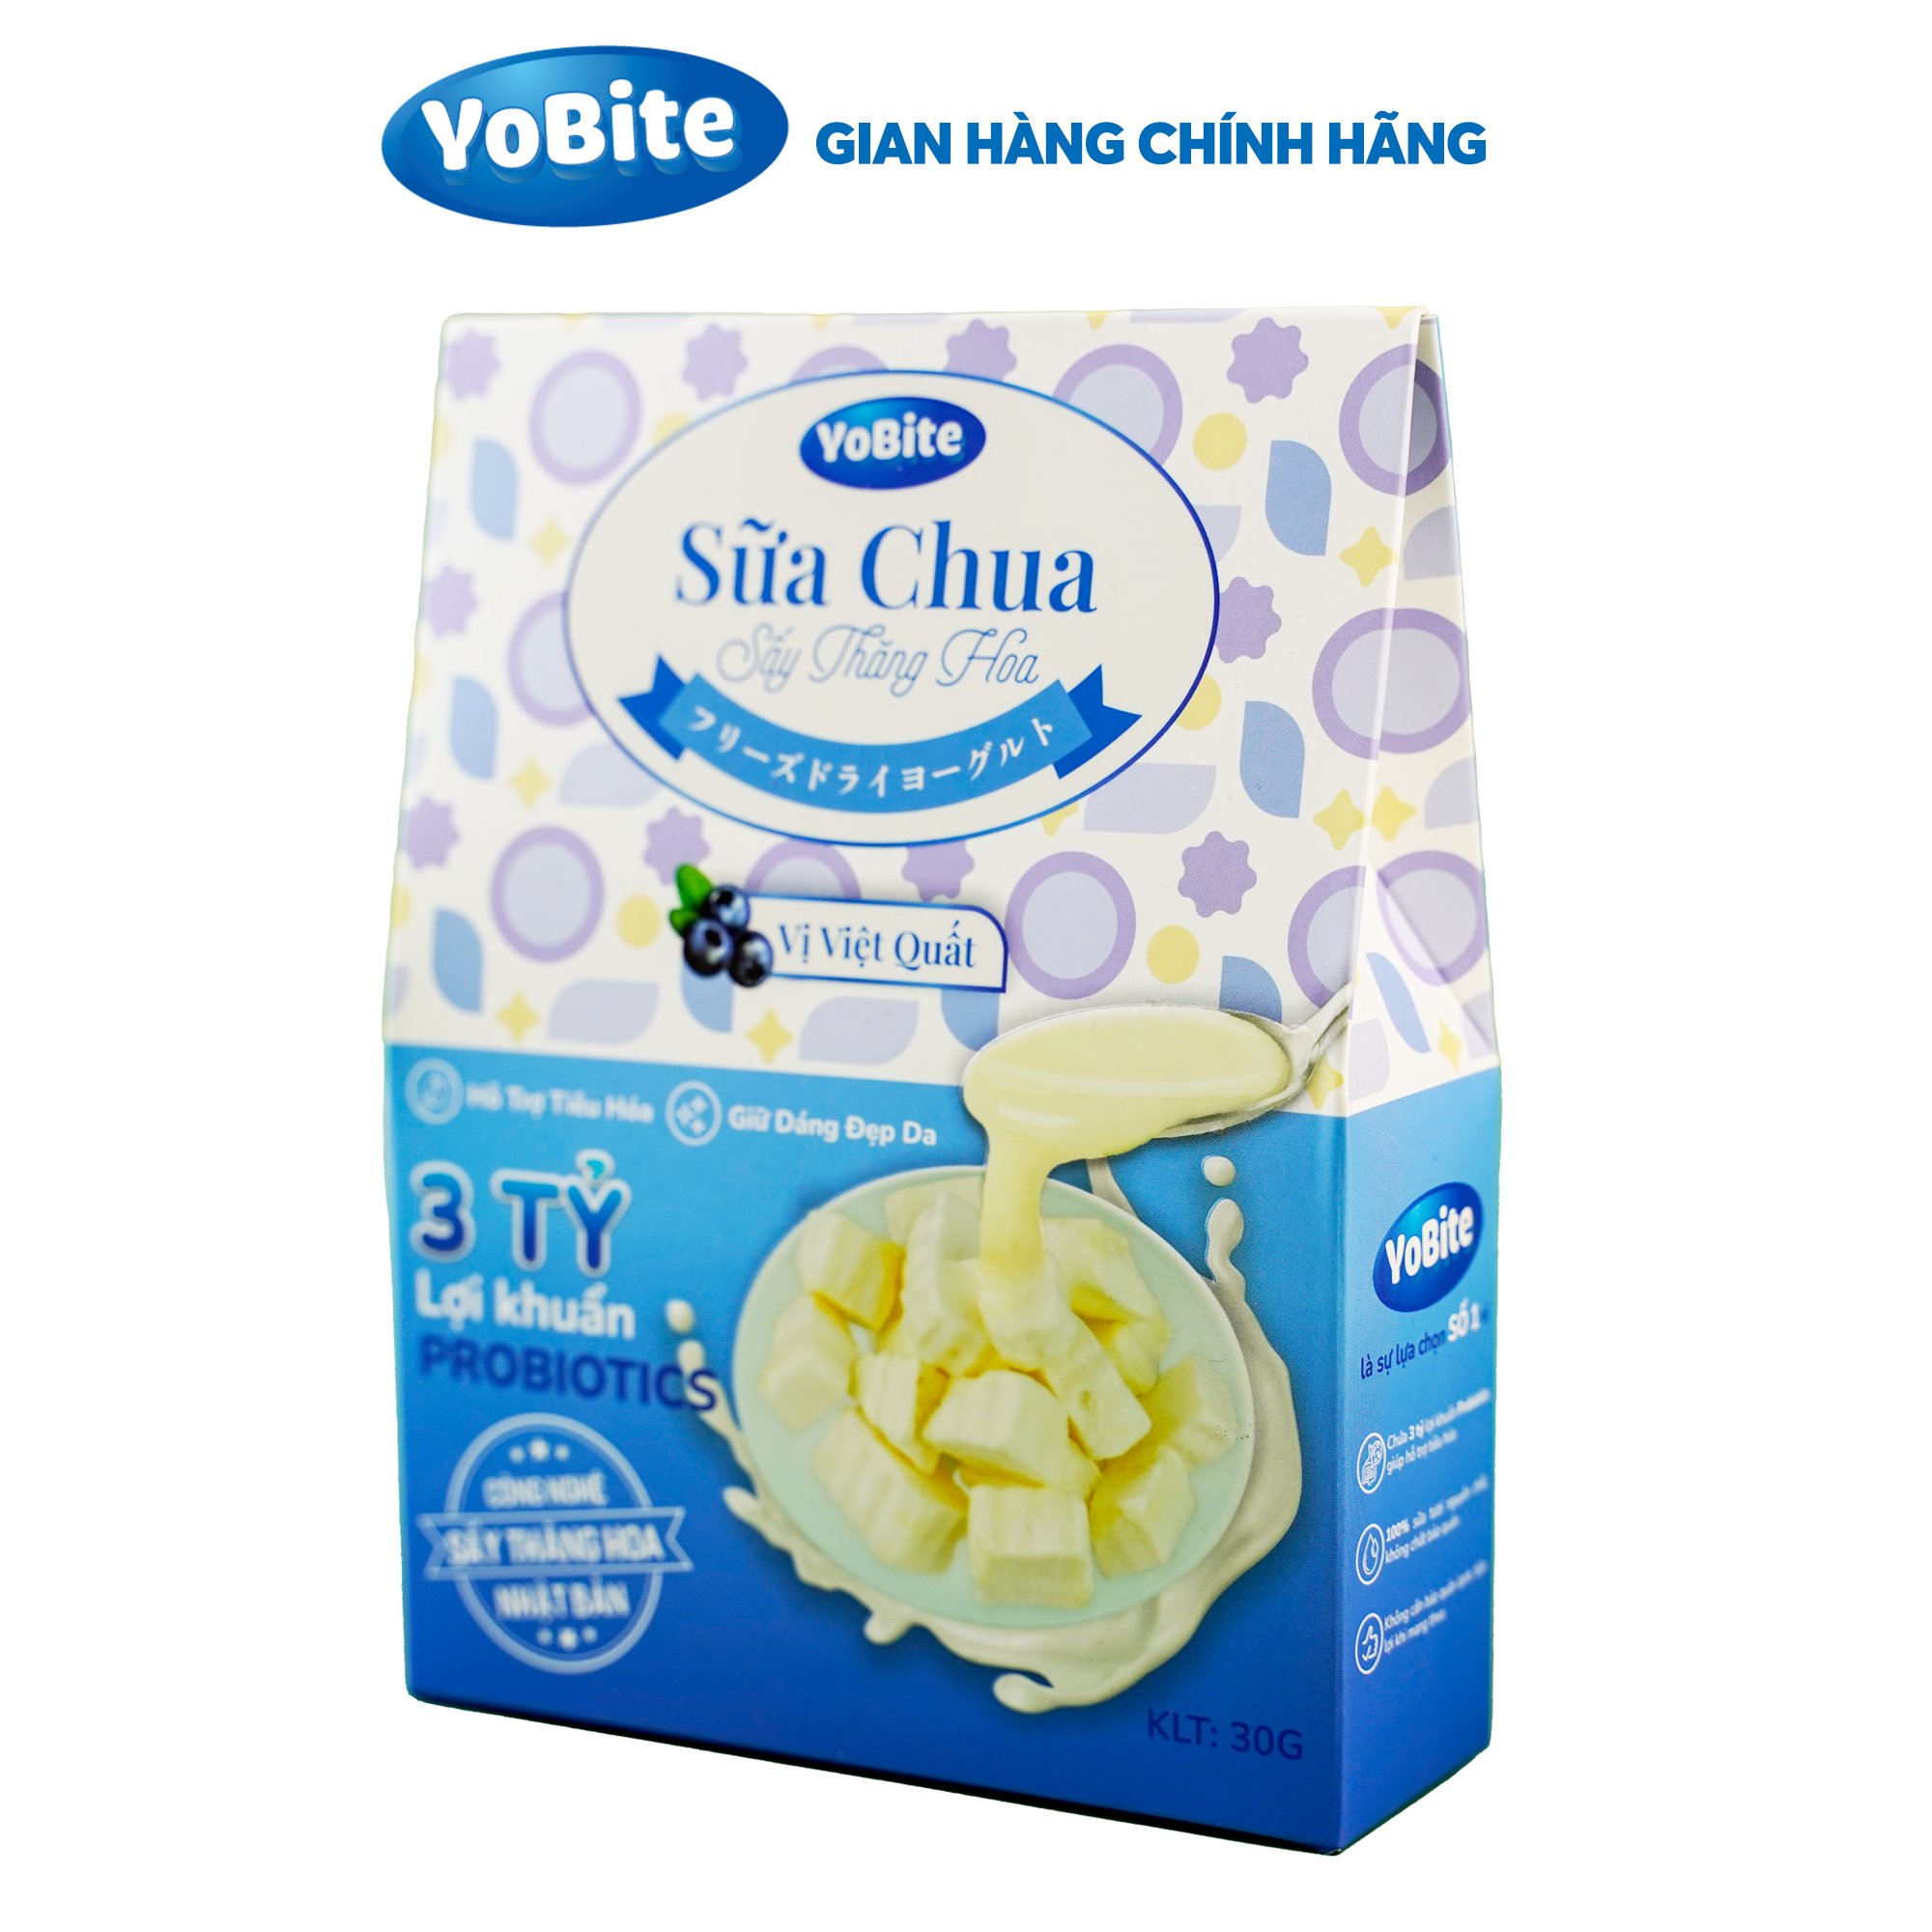 Sữa chua khô giảm cân vị Việt quất - YoBite Healthy - Giữ dáng đẹp da